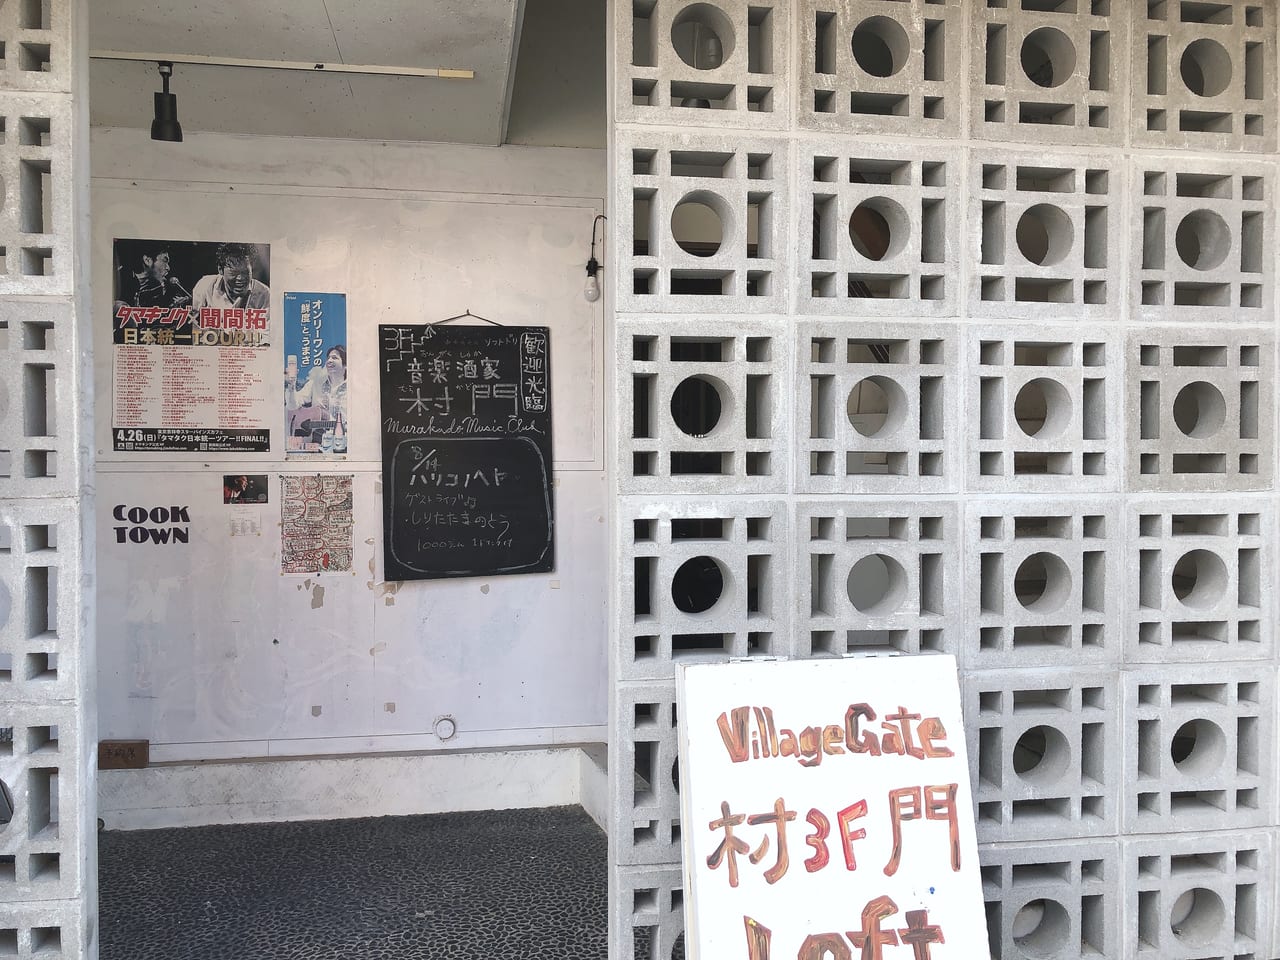 富山市 上本町におしゃれな穴場がオープンしています 隠れ家のような店 Cooktown 号外net 富山市